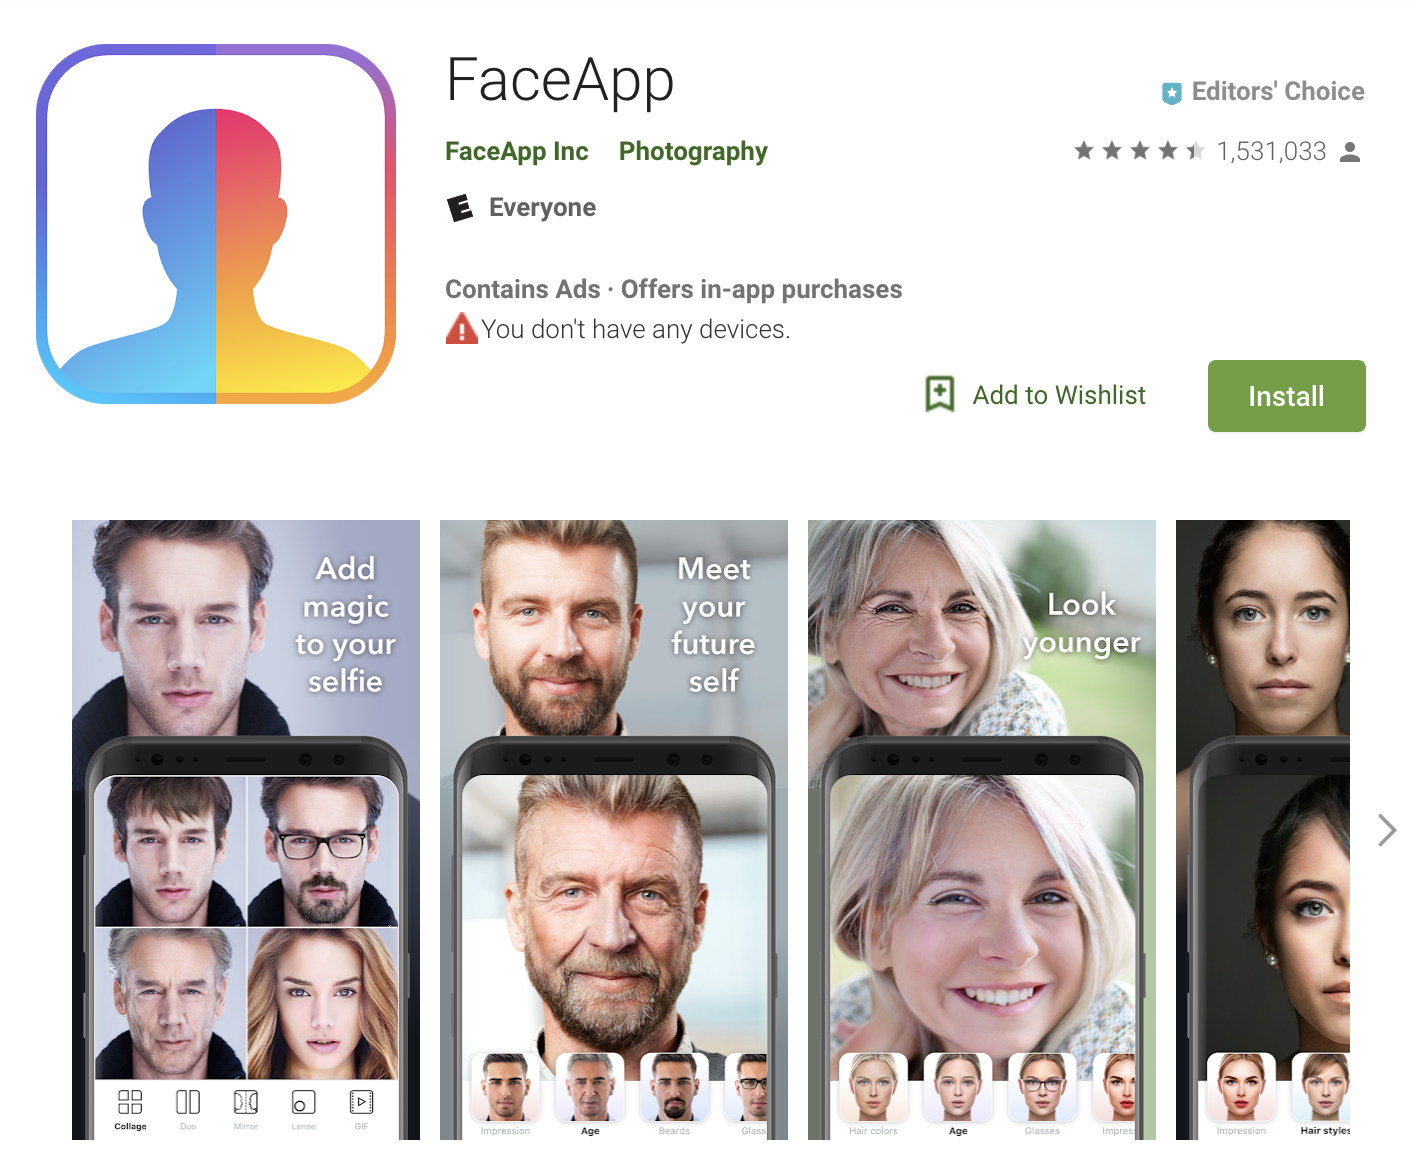 Is FaceApp a safe app?